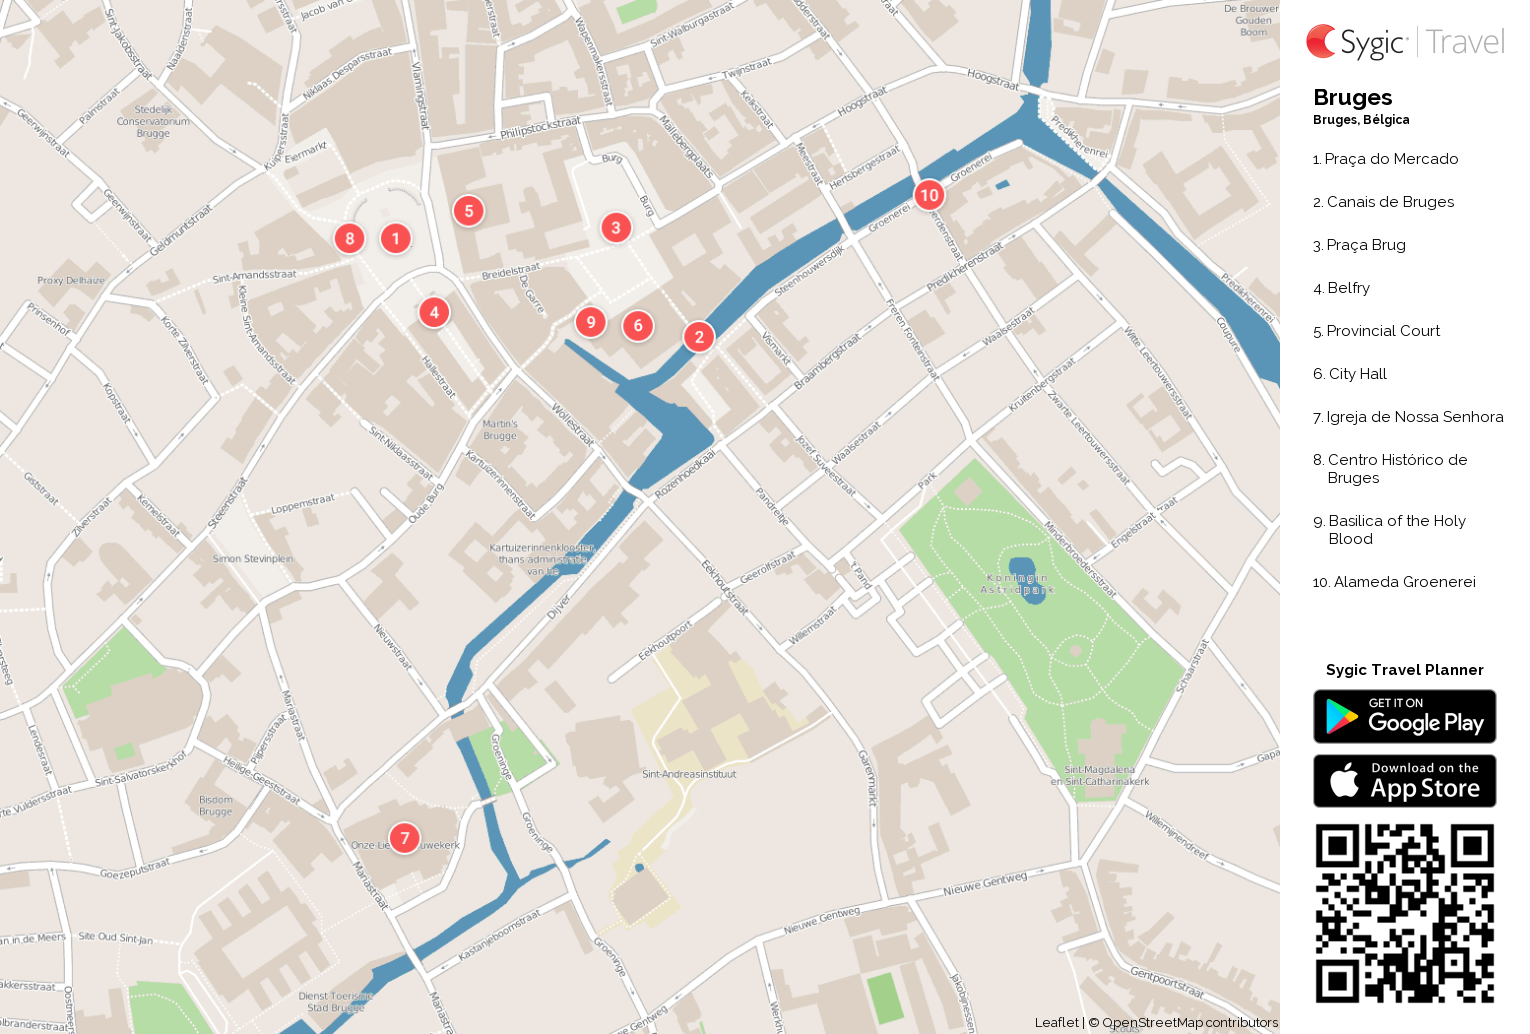 bruges-mapa-turistico-em-pdf